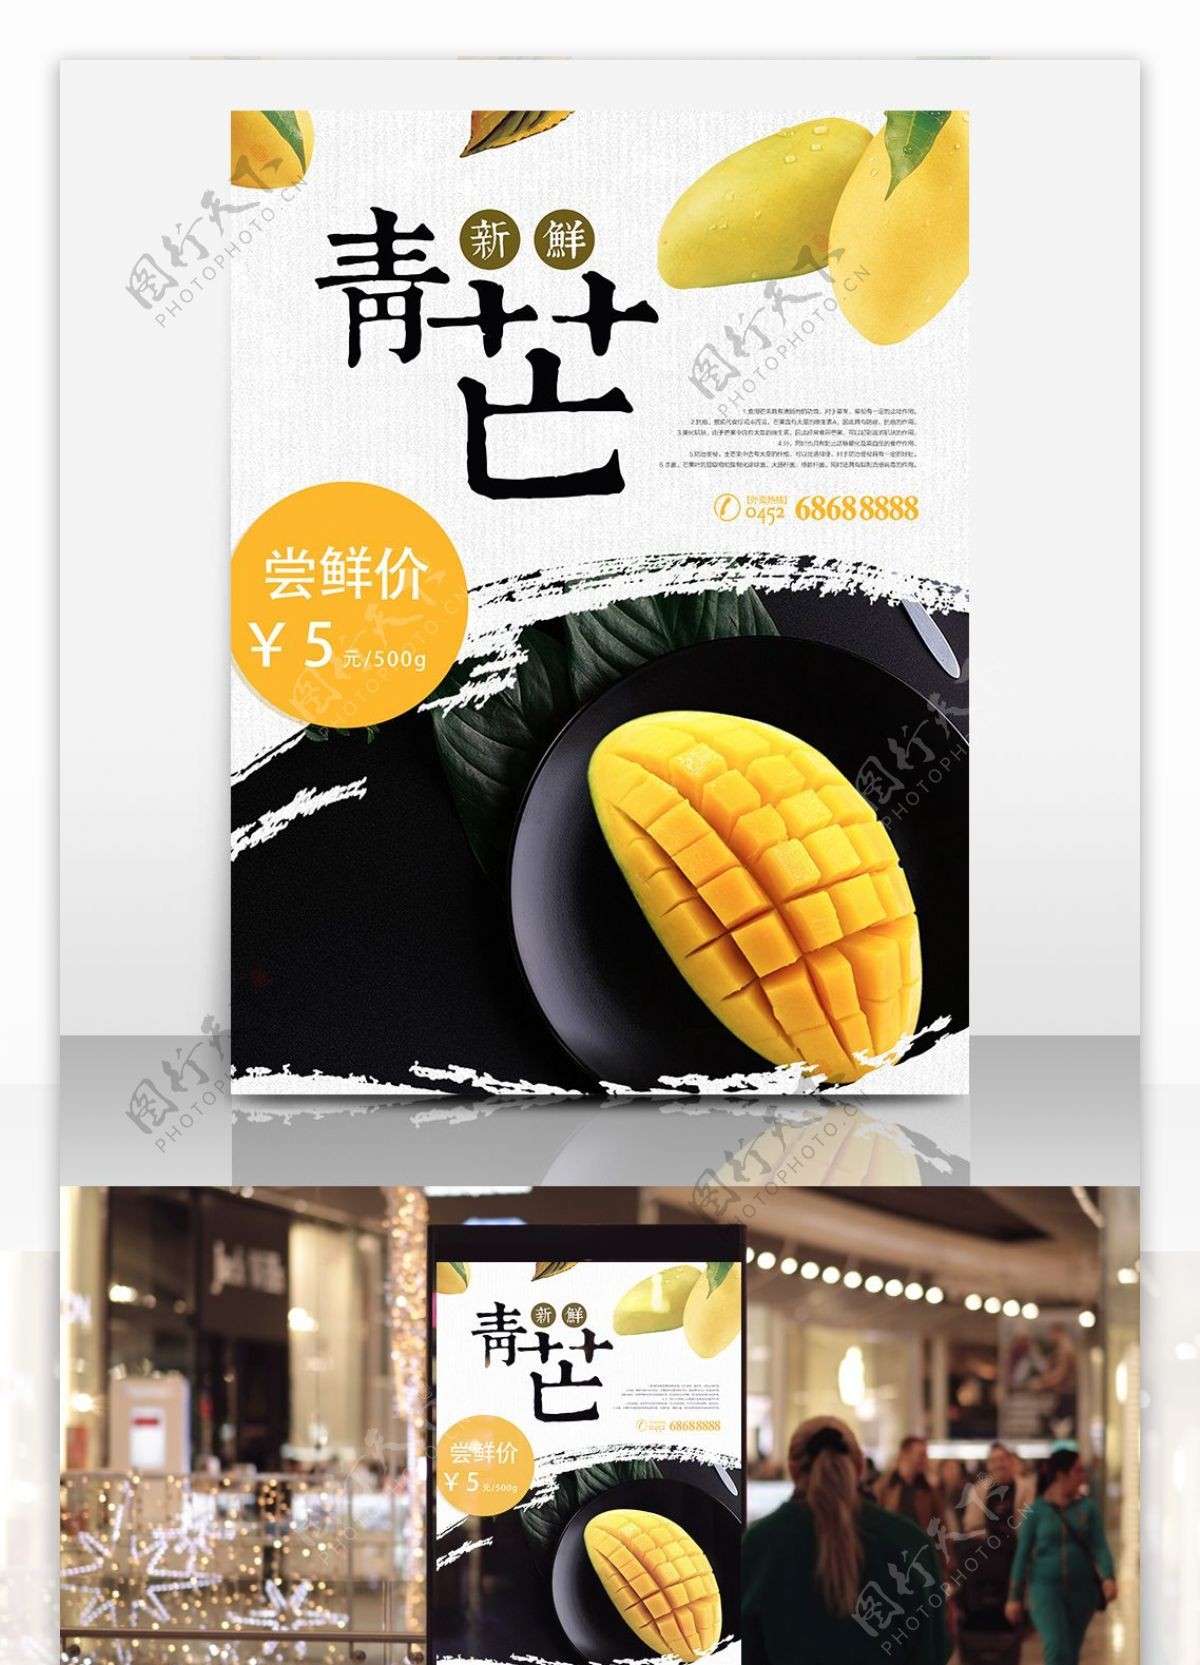 新鲜青芒水果店促销海报